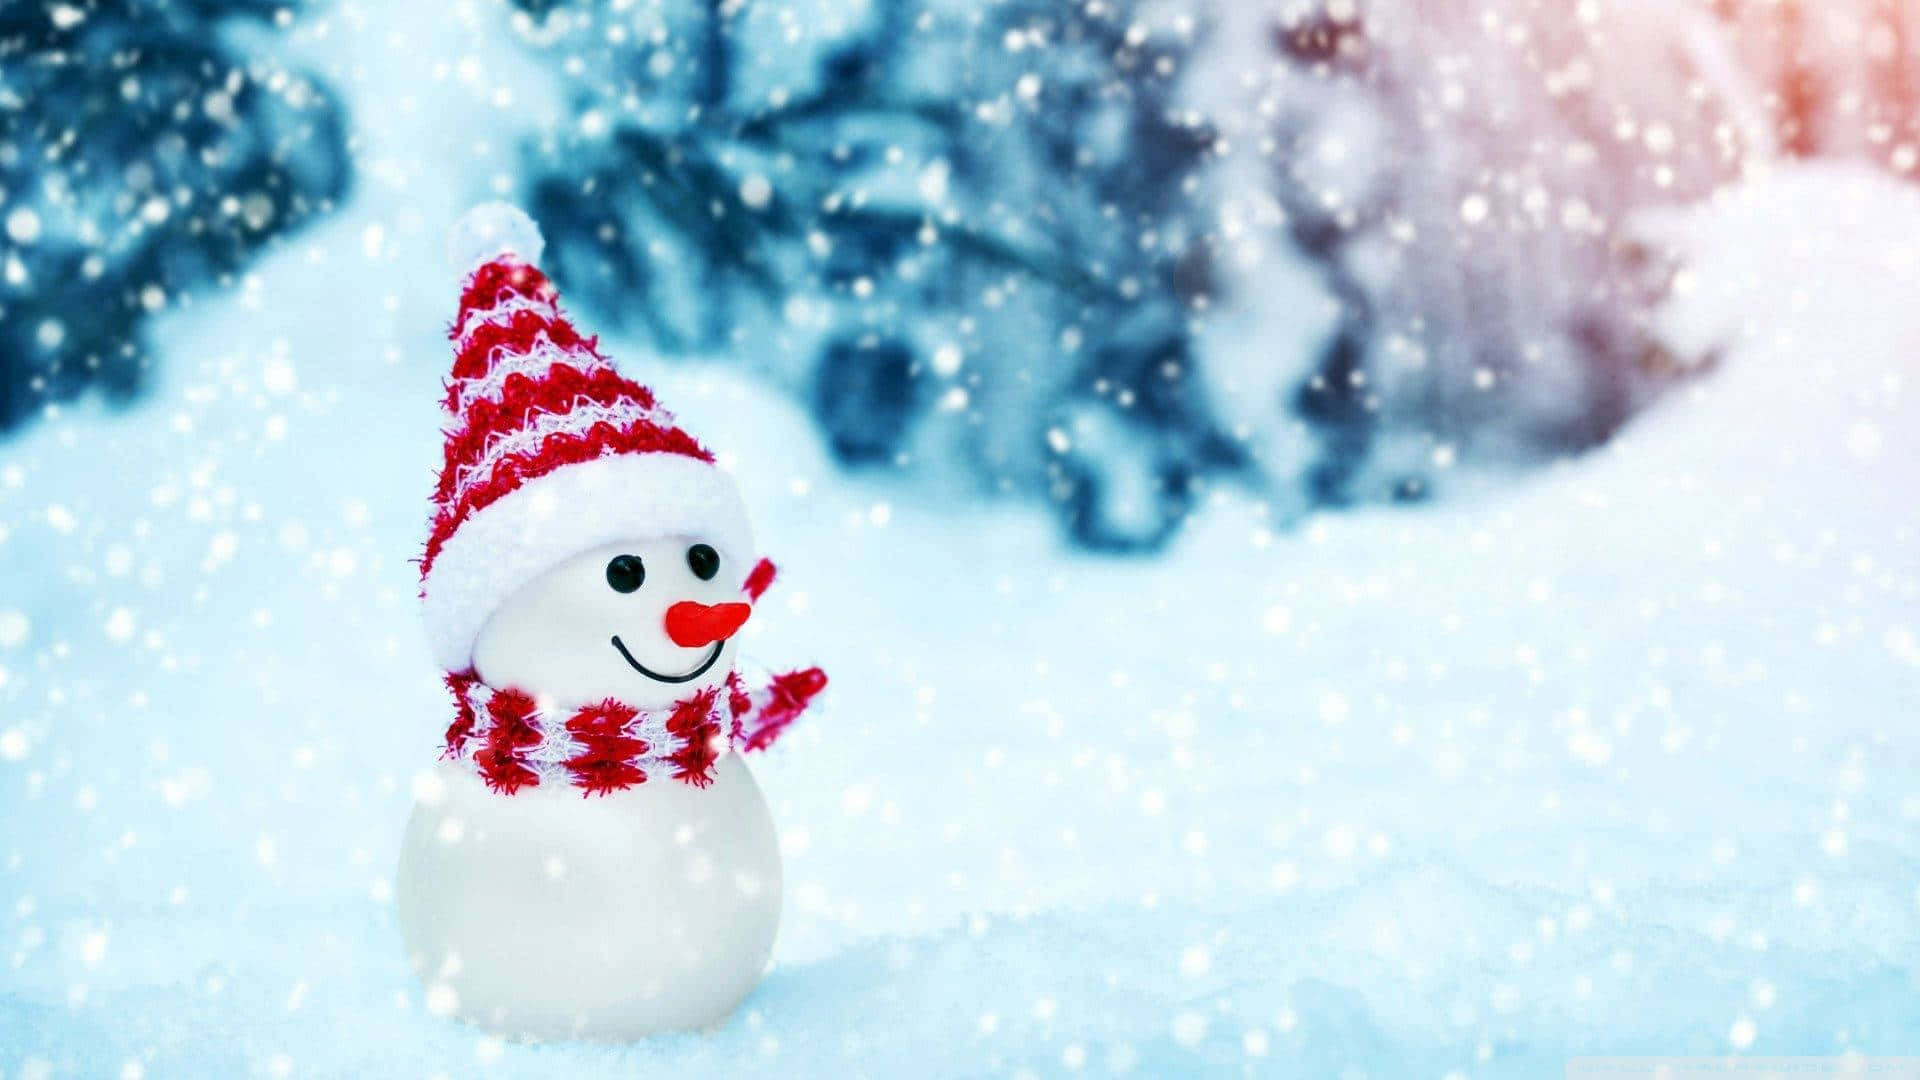 A snowman on a crisp winter day